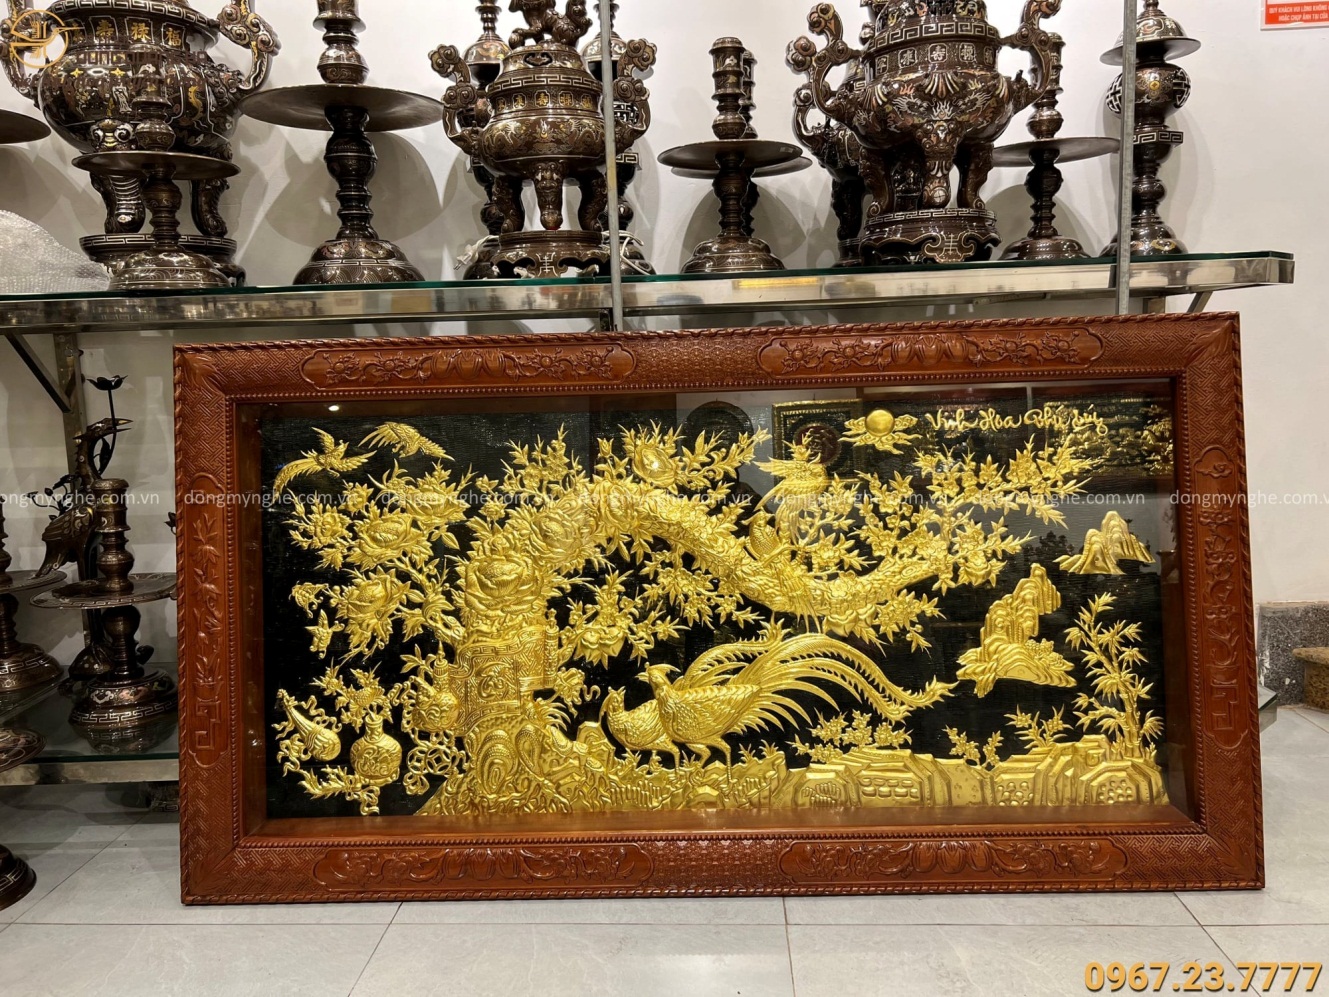 Tranh đồng Vinh Hoa Phú Quý thếp vàng khung gỗ gụ 1m7 x 90cm